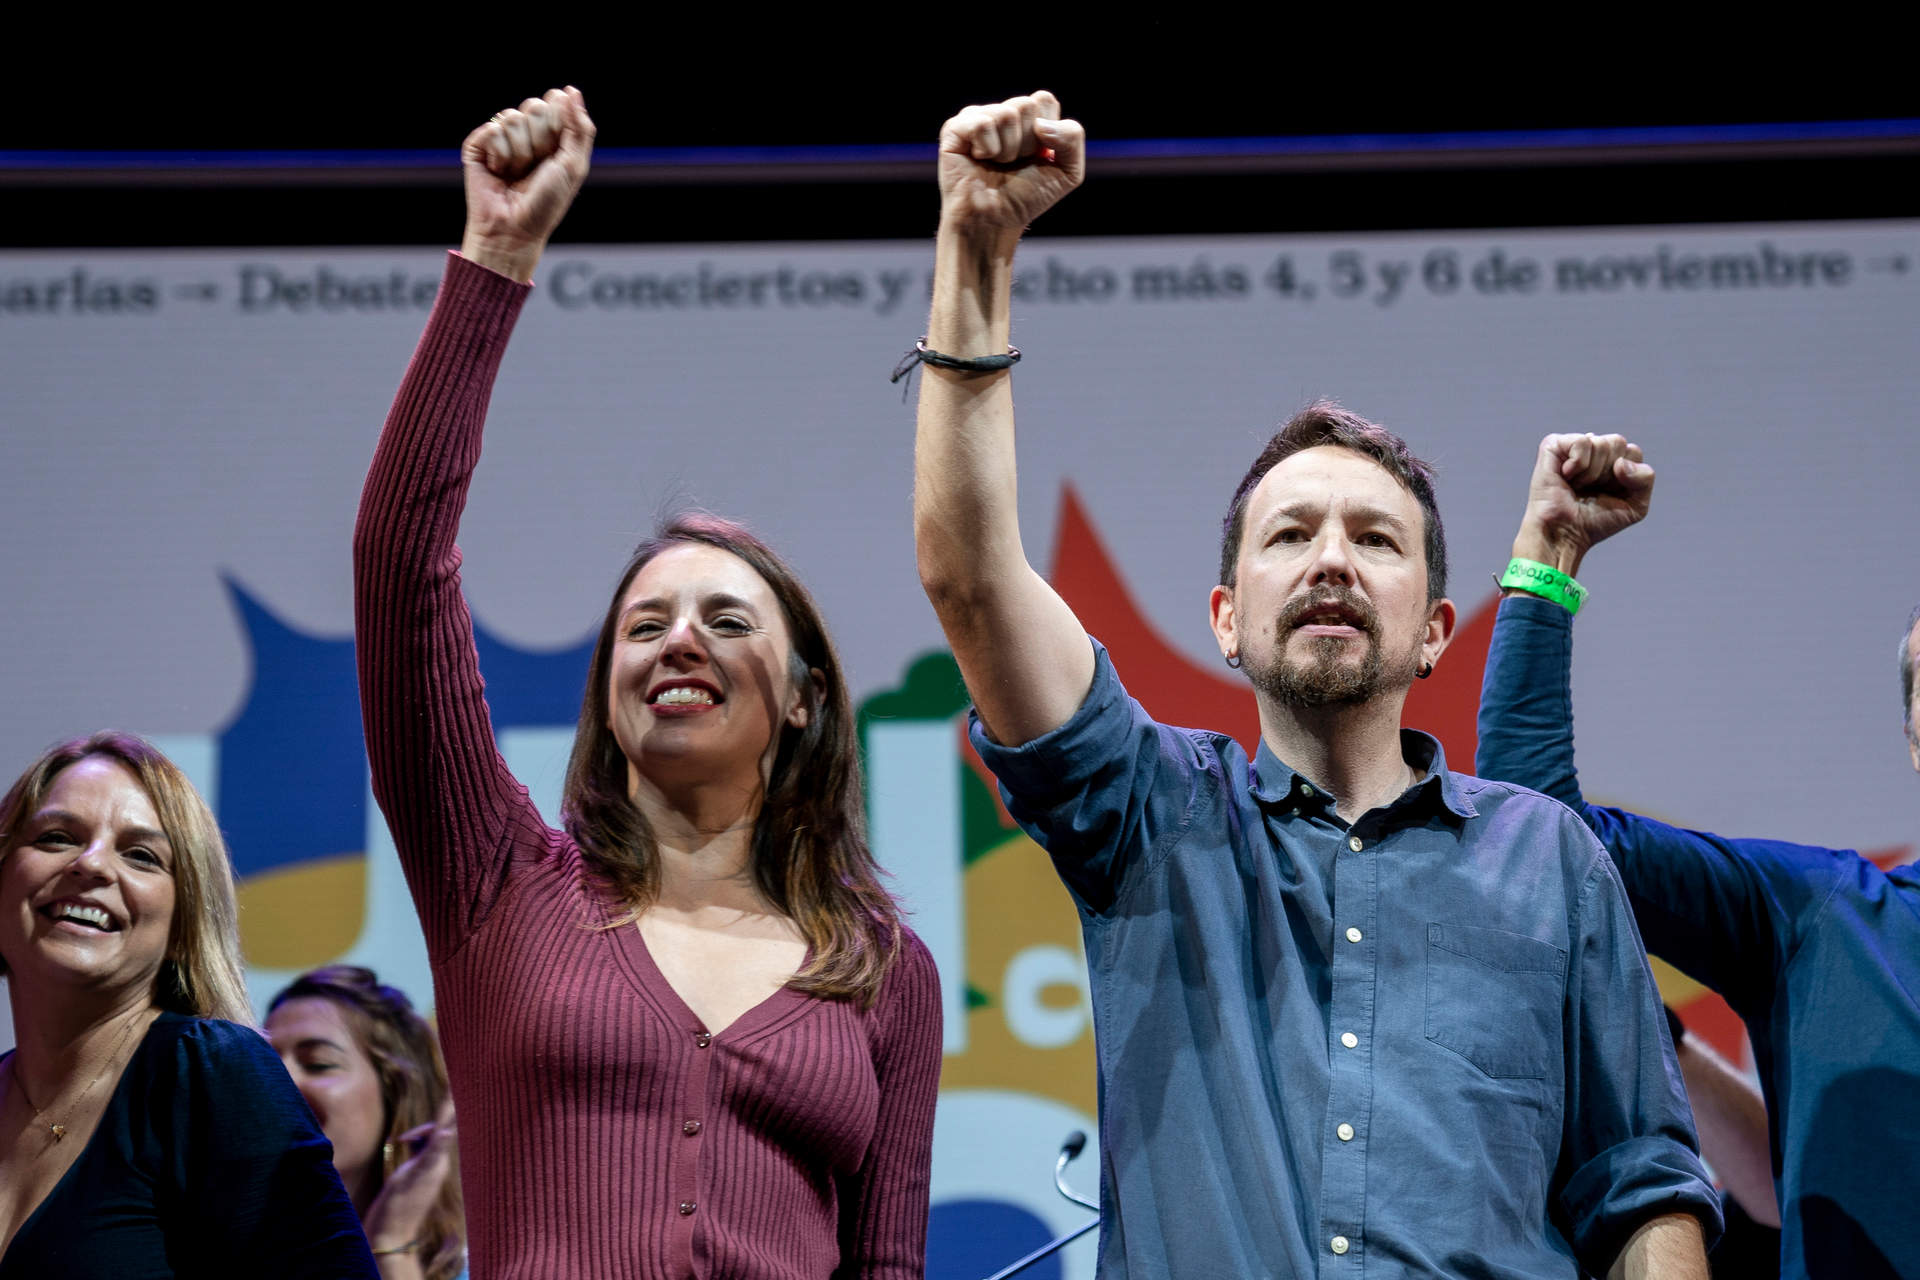 Cargar máis
El exlíder de Podemos, Pablo Iglesias, y la ministra de Igualdad, Irene Montero, en el acto de la 'Uni de otoño' en el Teatro Coliseum, a 6 de noviembre de 2022, en Madrid (España).